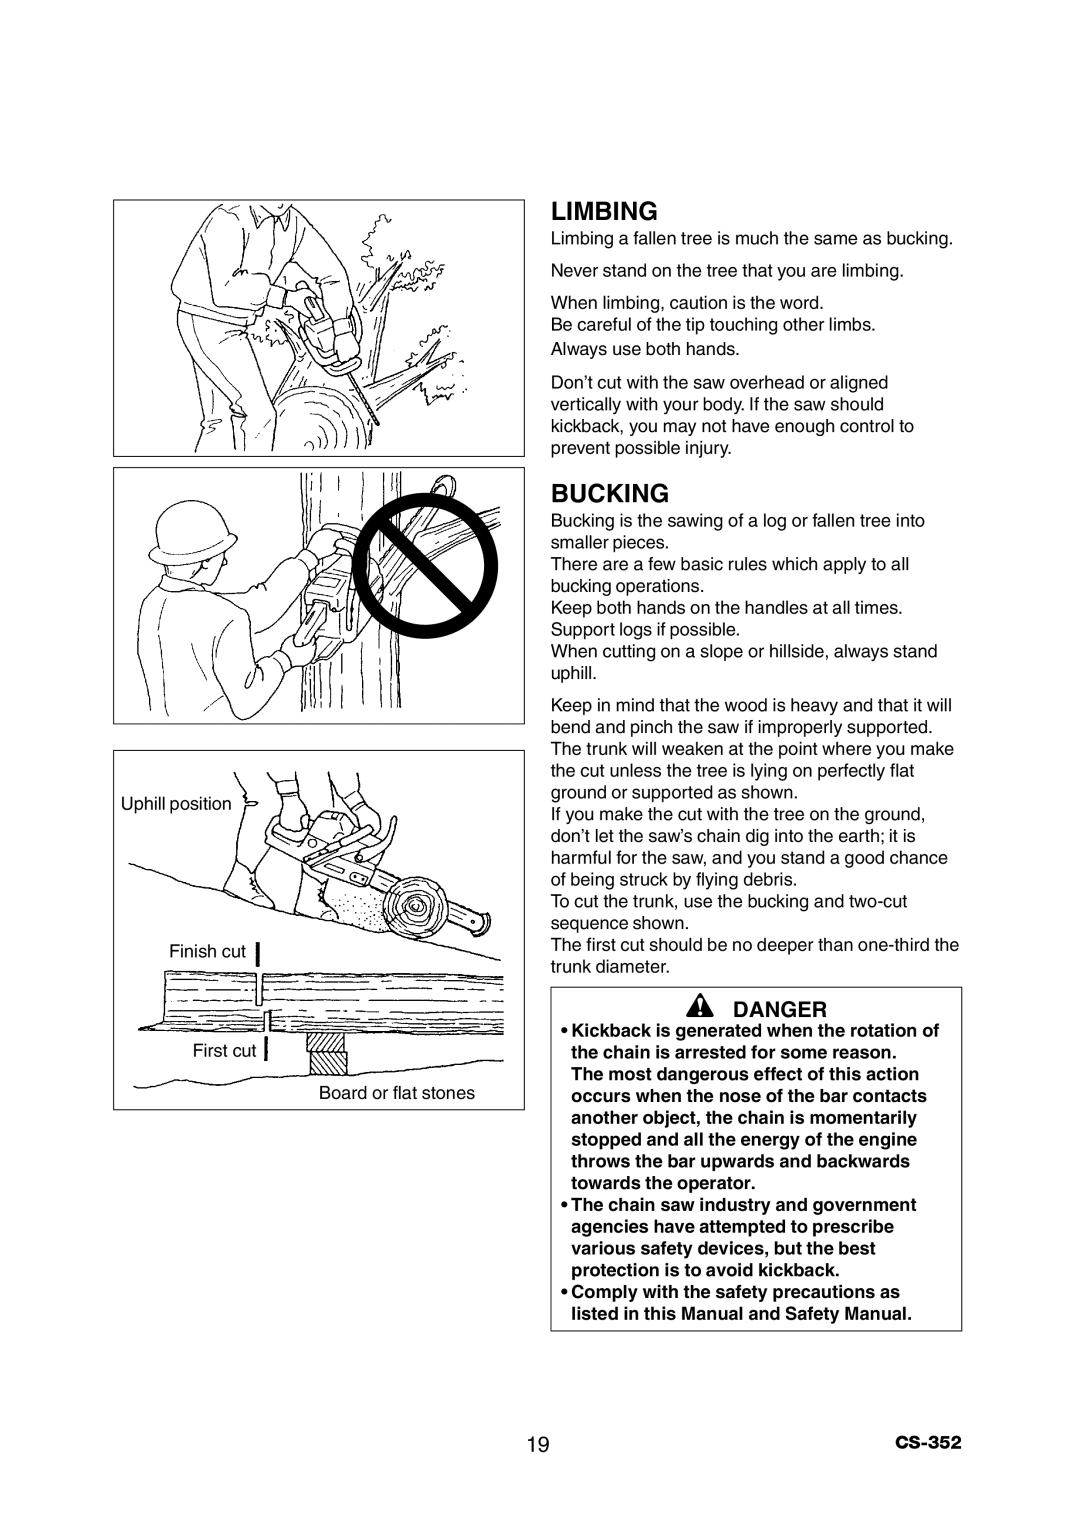 Echo CS-352 instruction manual Limbing, Bucking, Danger 